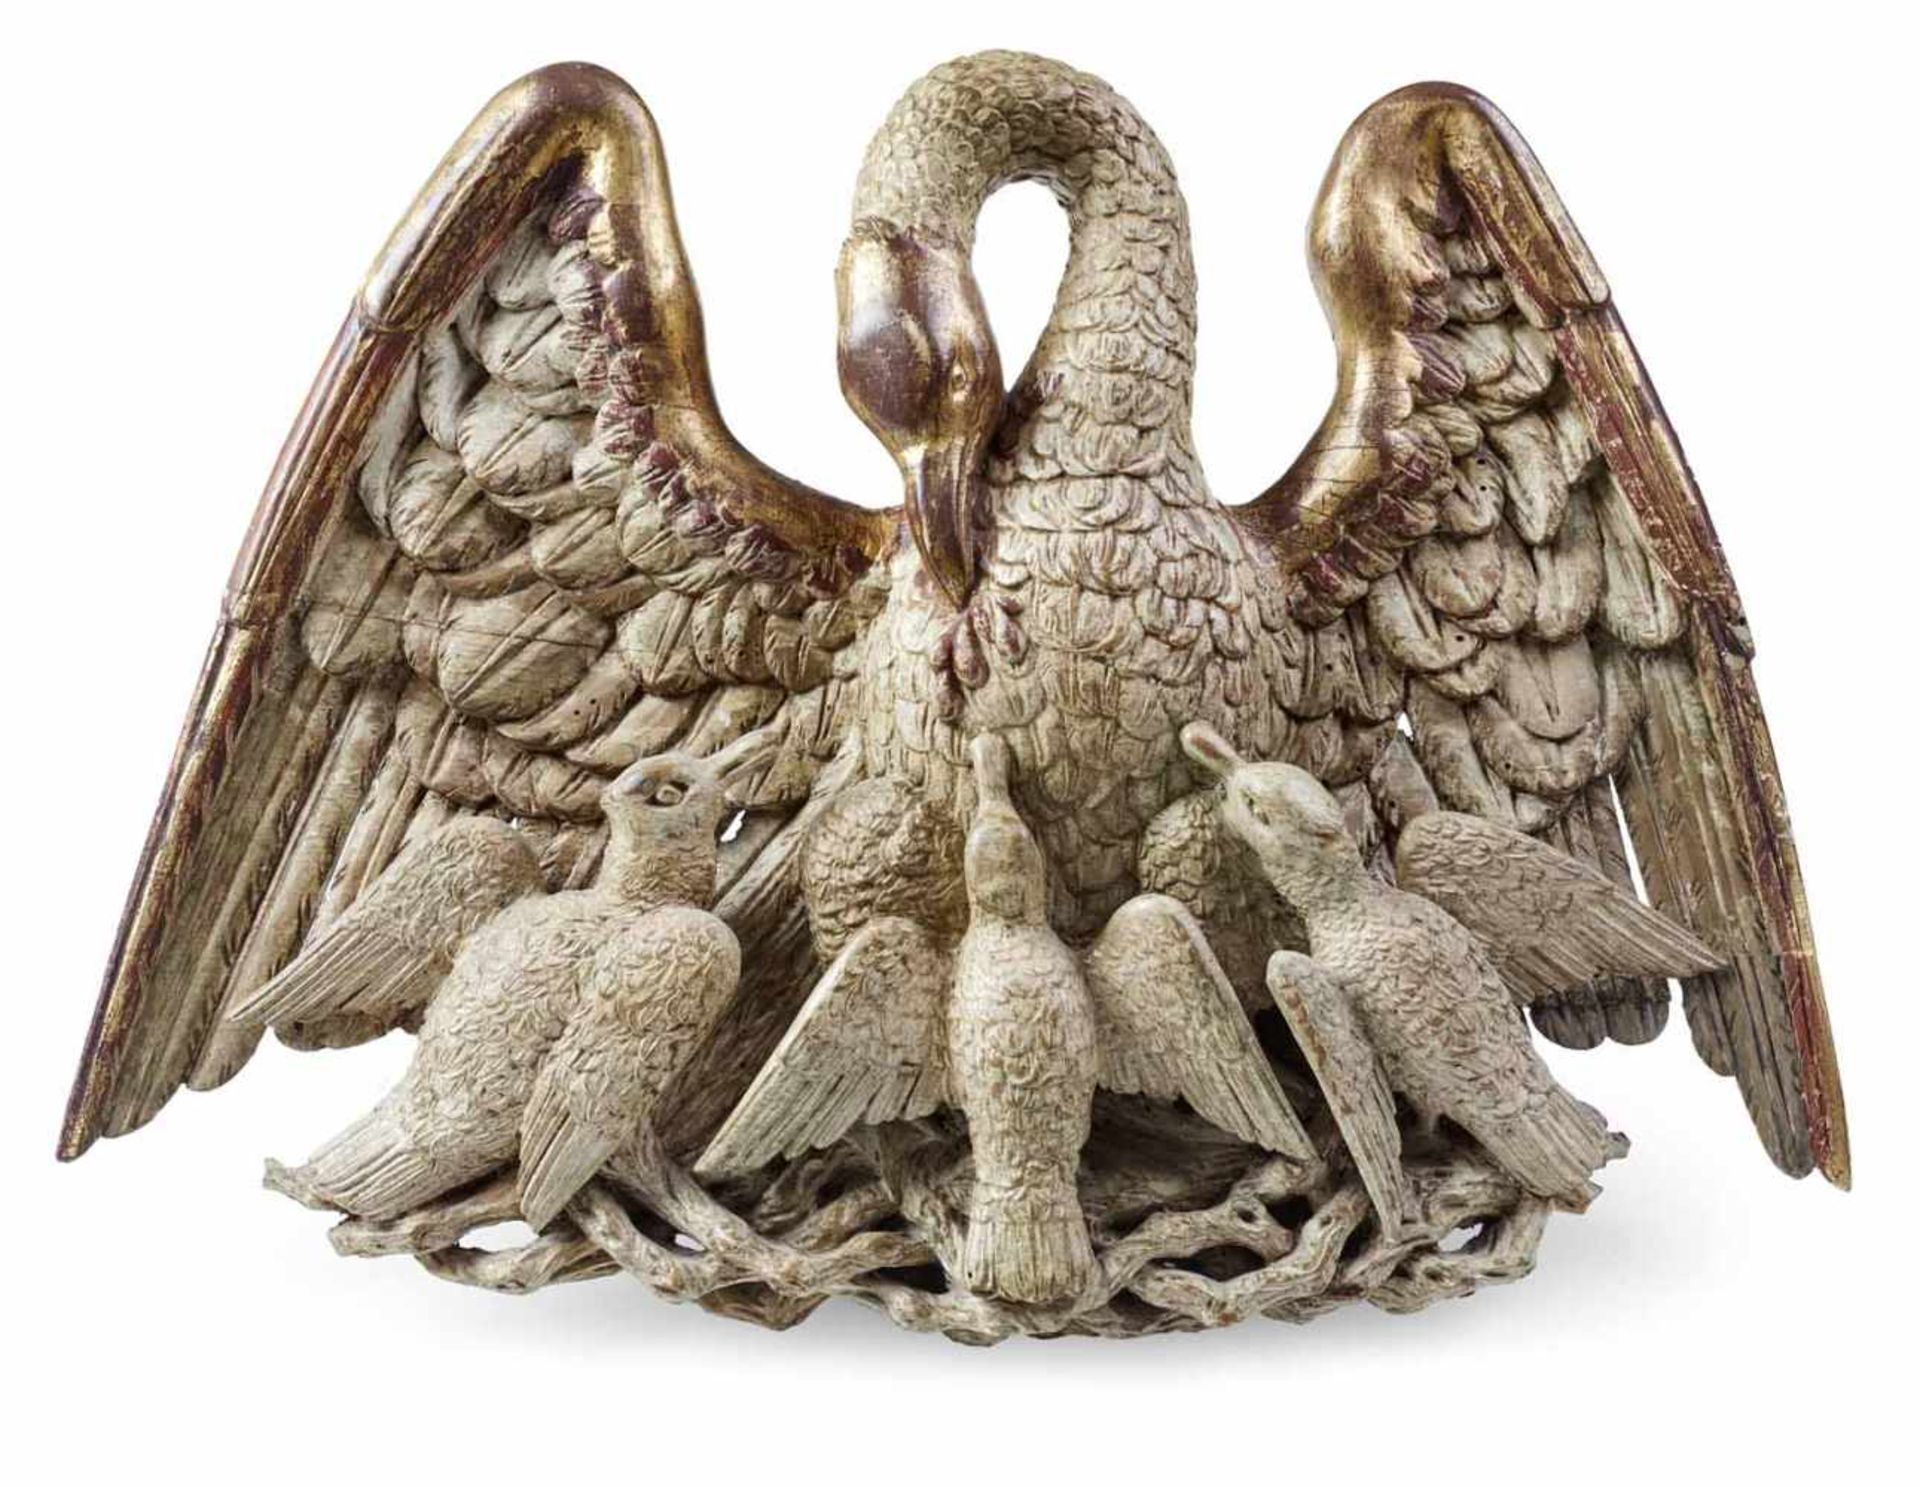 Pelikangruppe18. Jahrhundert32 x 43 cmPelikanmutter füttert ihre Jungen aus ihrem eigenen Leib.